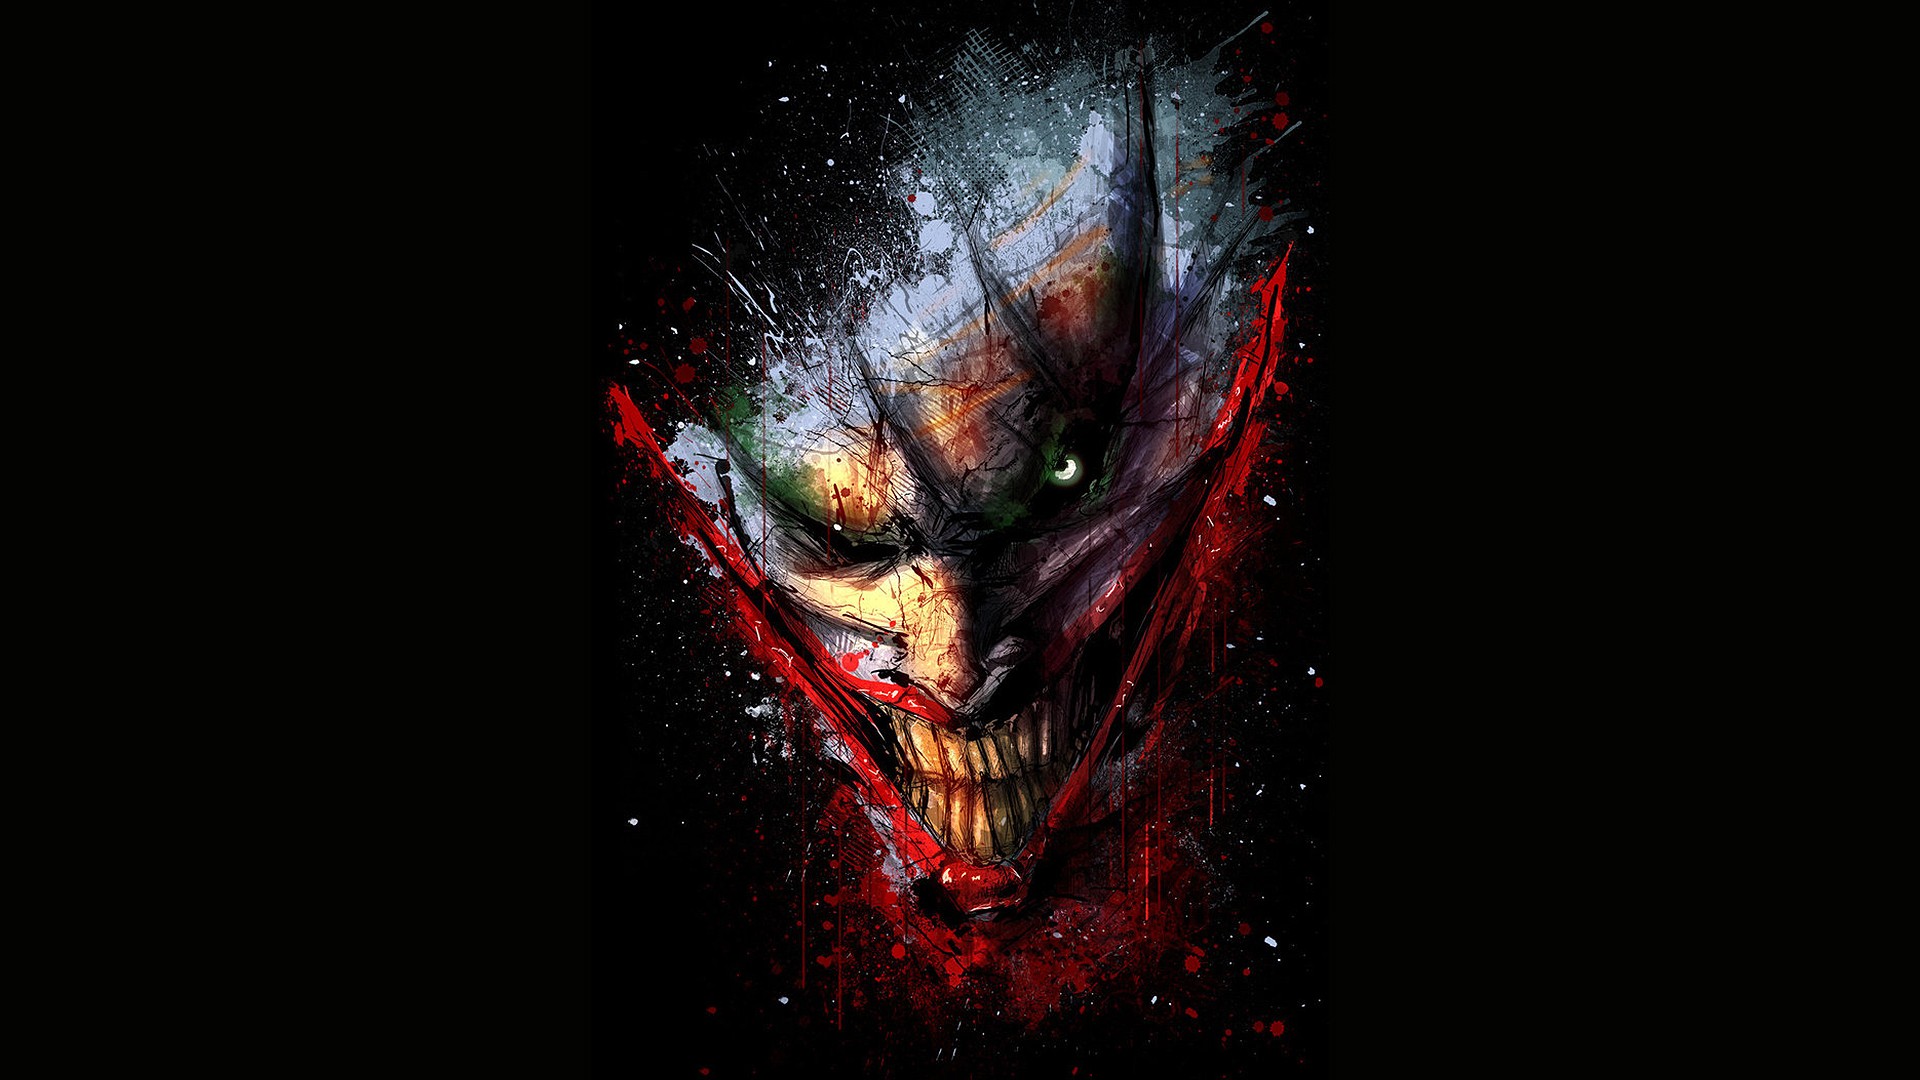 Batman Joker Black Drawing dark wallpaper 1920x1080 125685 1920x1080